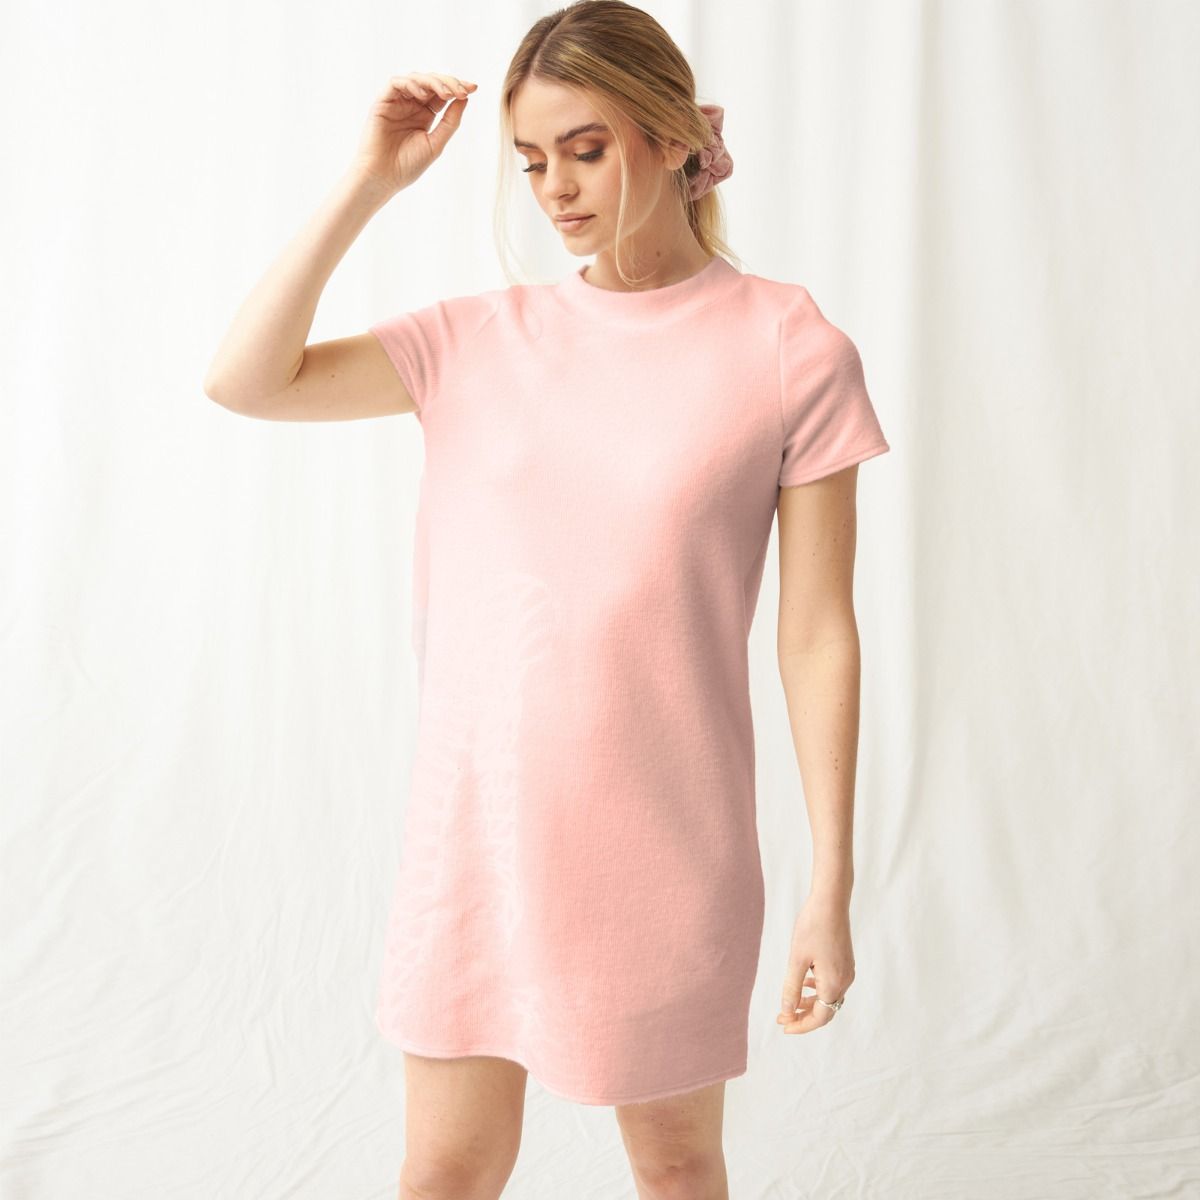 Fremmedgøre Utænkelig mareridt OHS Super Soft Brushed Rib T-Shirt Dress - Blush